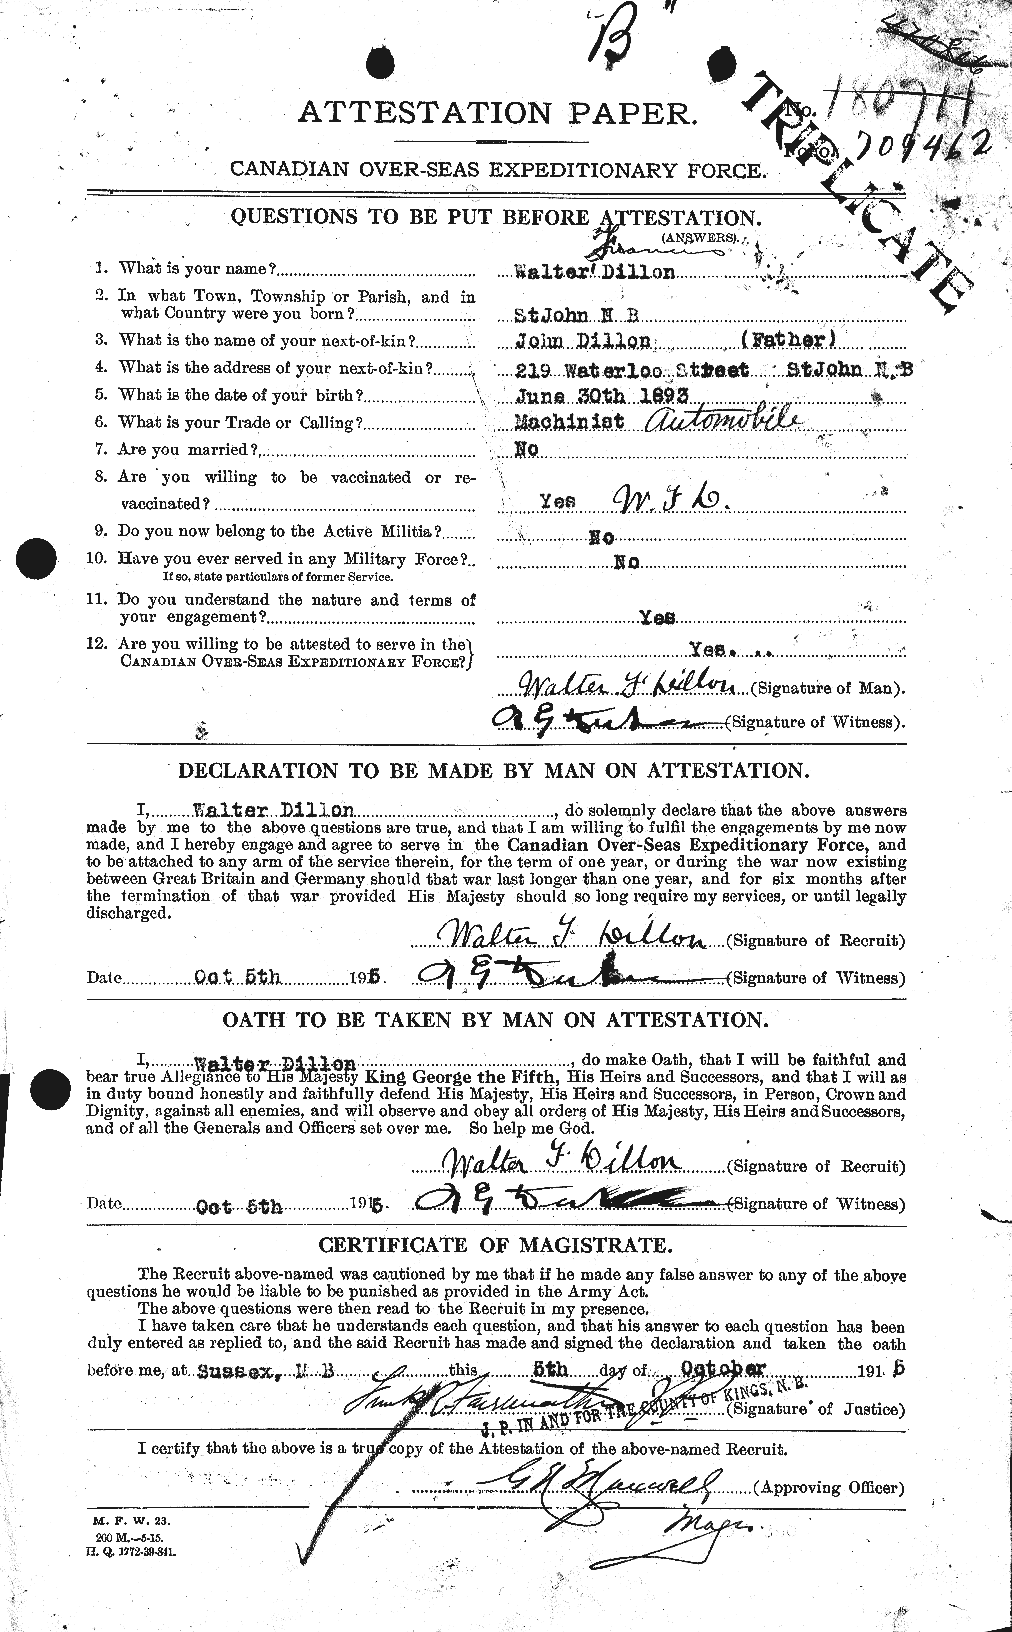 Dossiers du Personnel de la Première Guerre mondiale - CEC 293741a